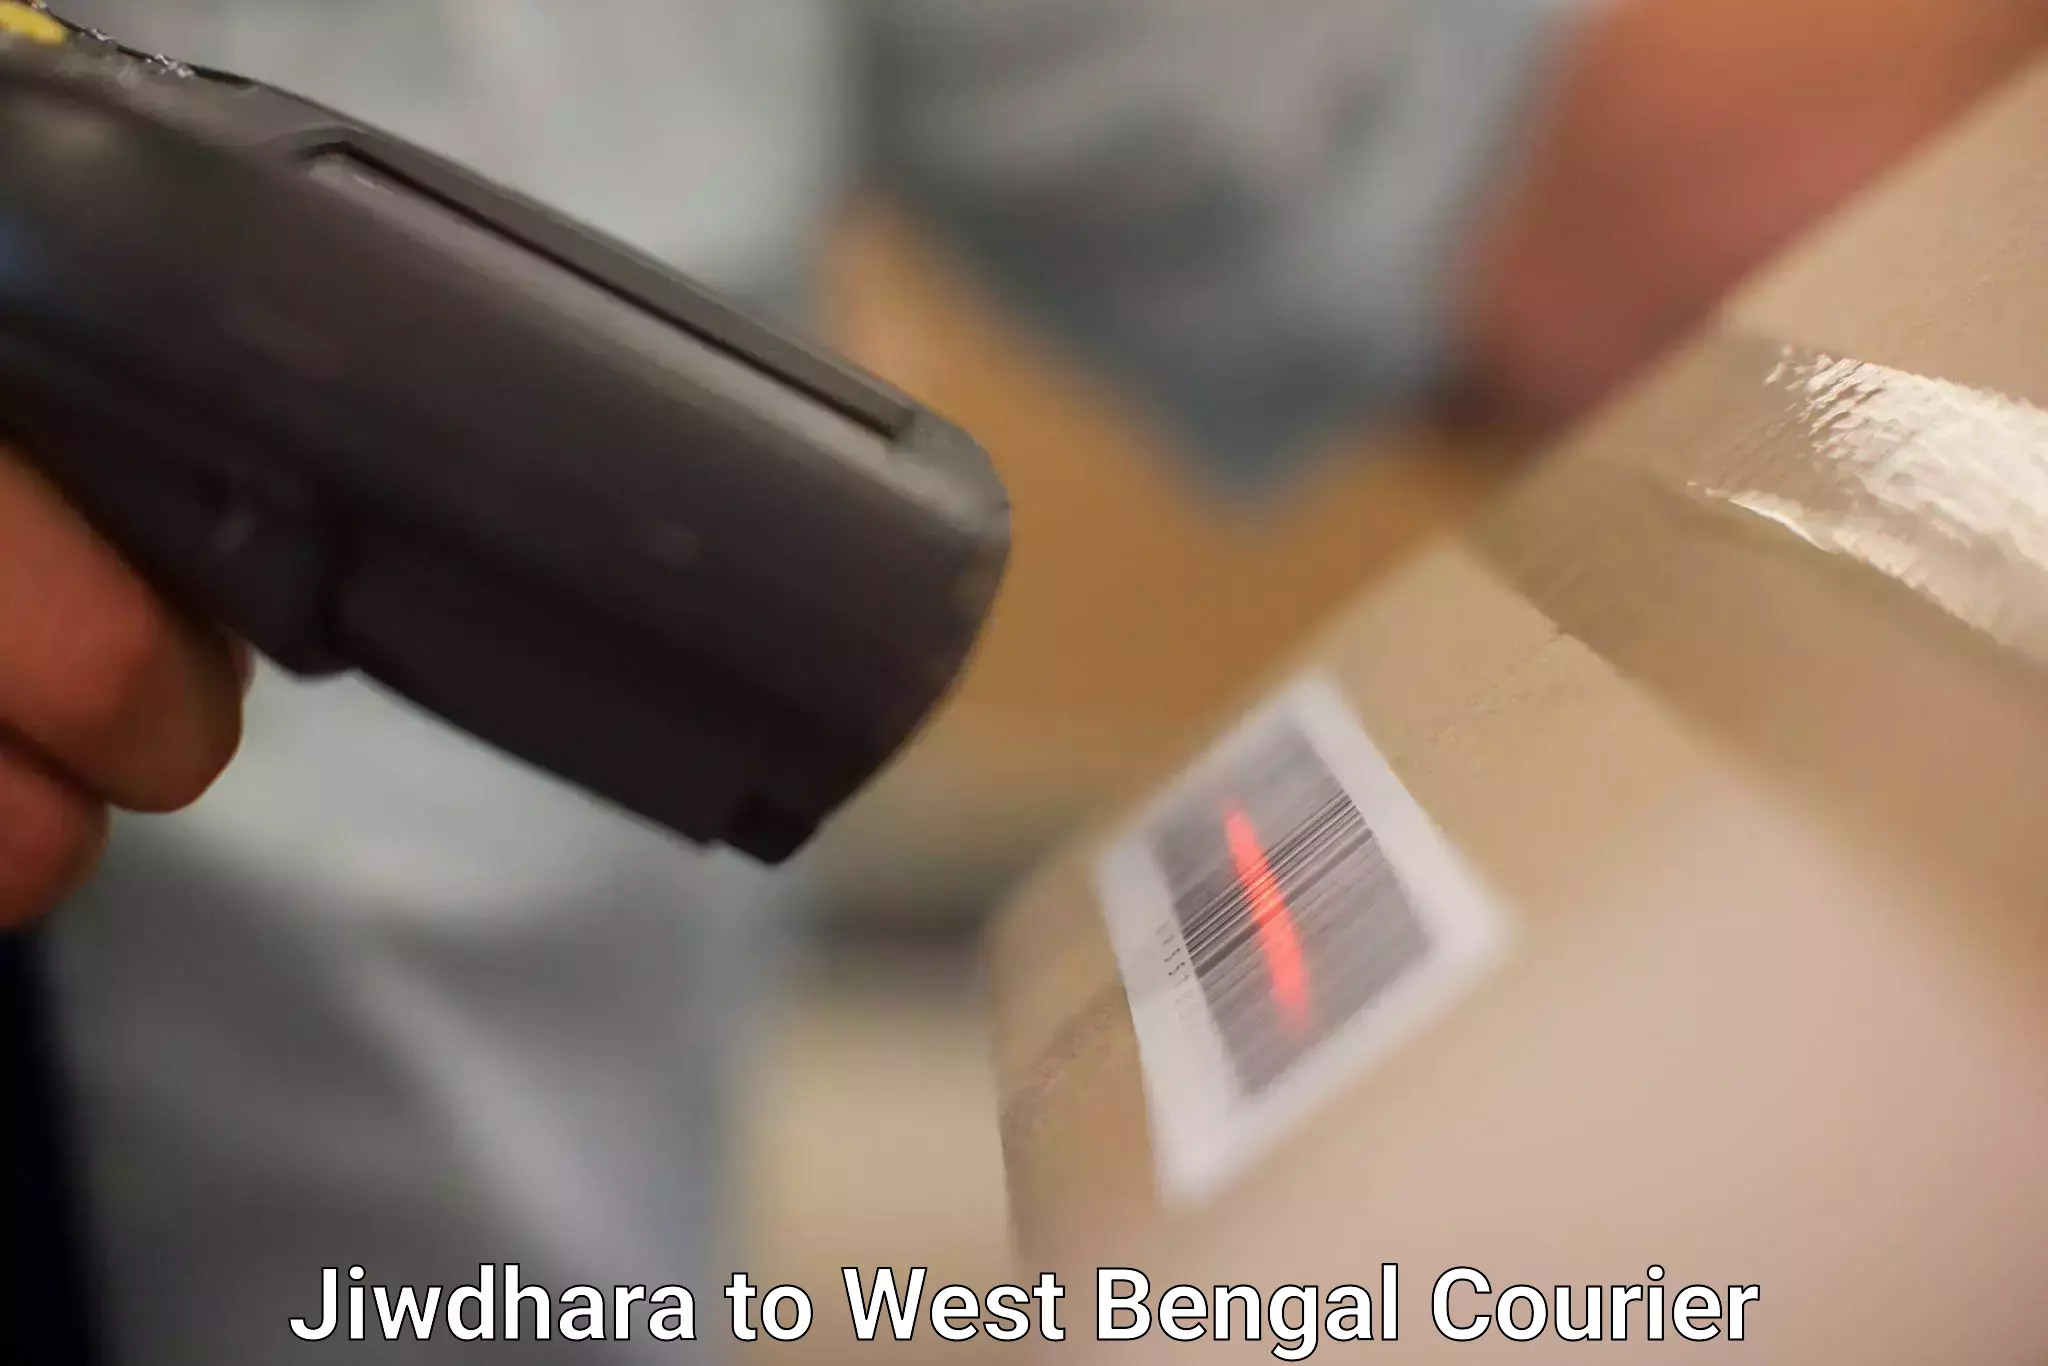 Seamless shipping service Jiwdhara to West Bengal